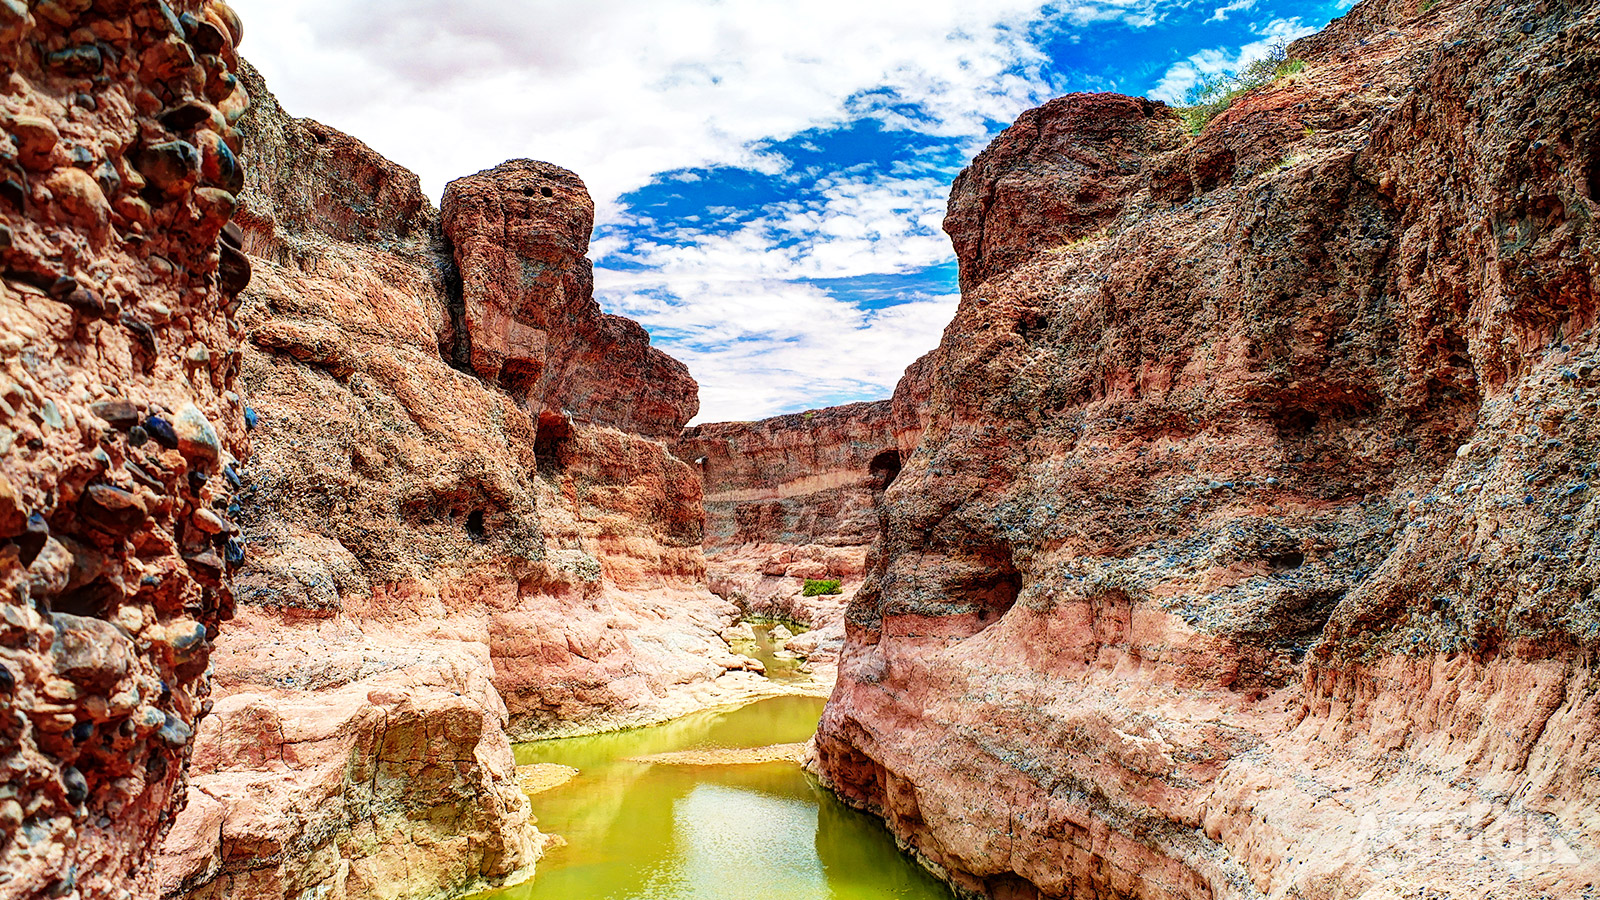 Sesriem Canyon is een nauwe ravijn van zo’n 30m diep waar je langs schitterende rotswanden wandelt